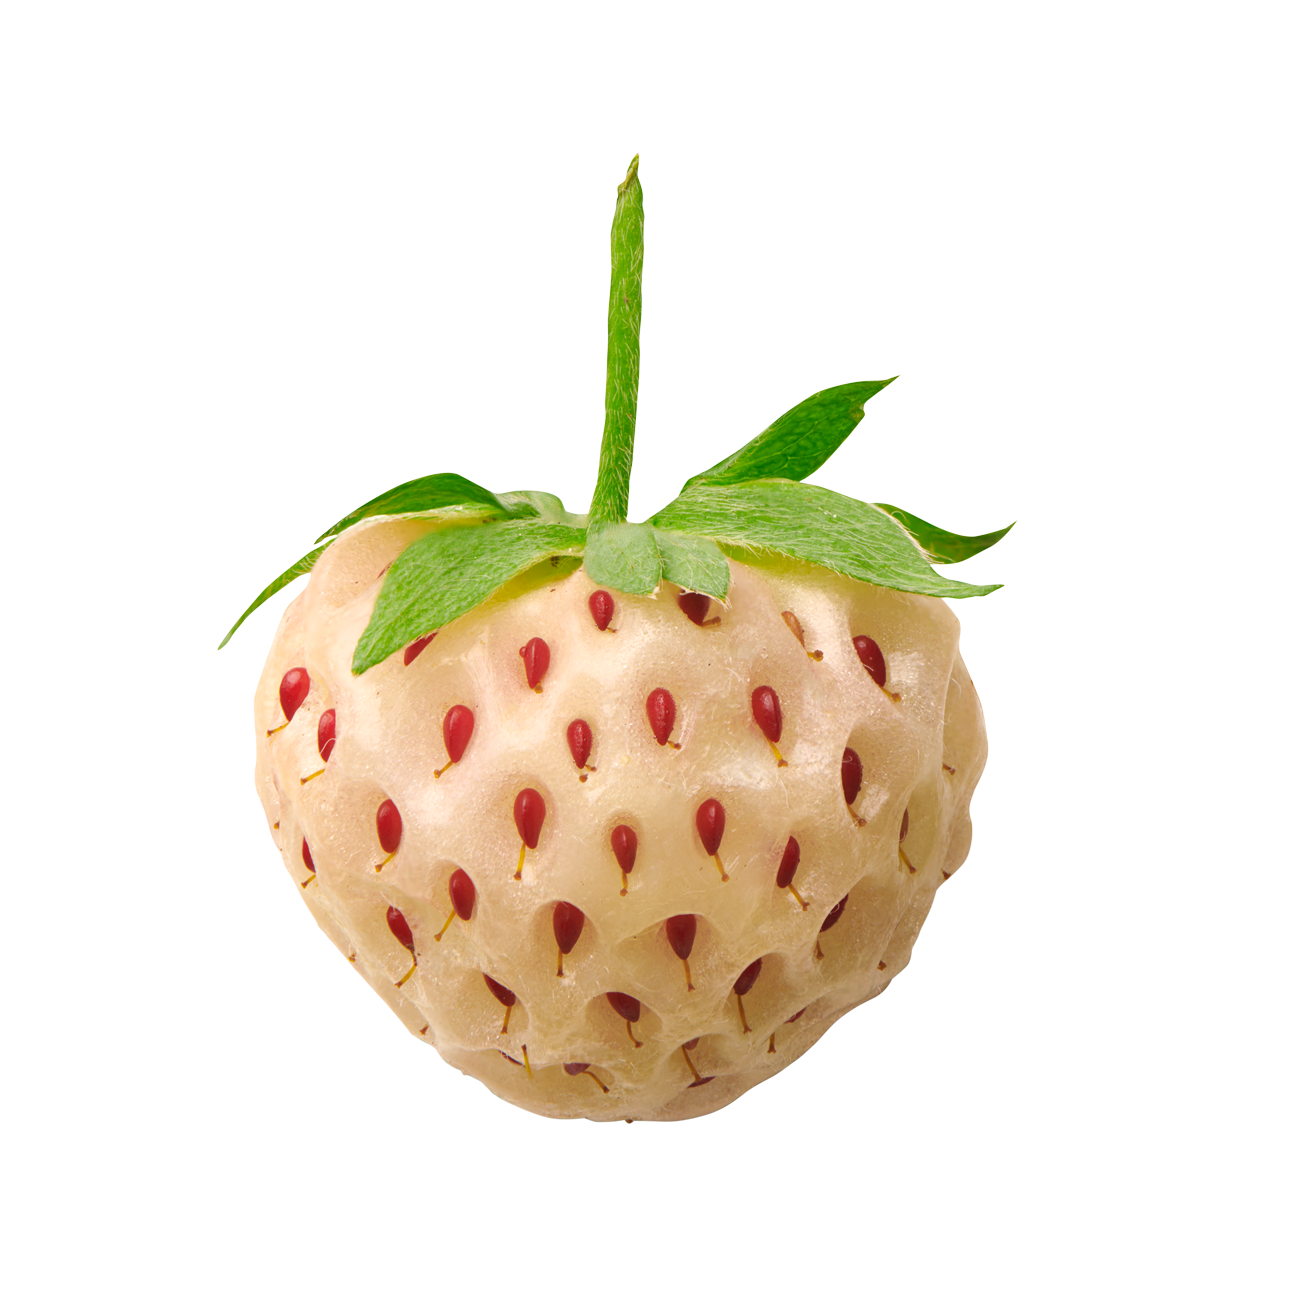 Pineberry - Wikipedia